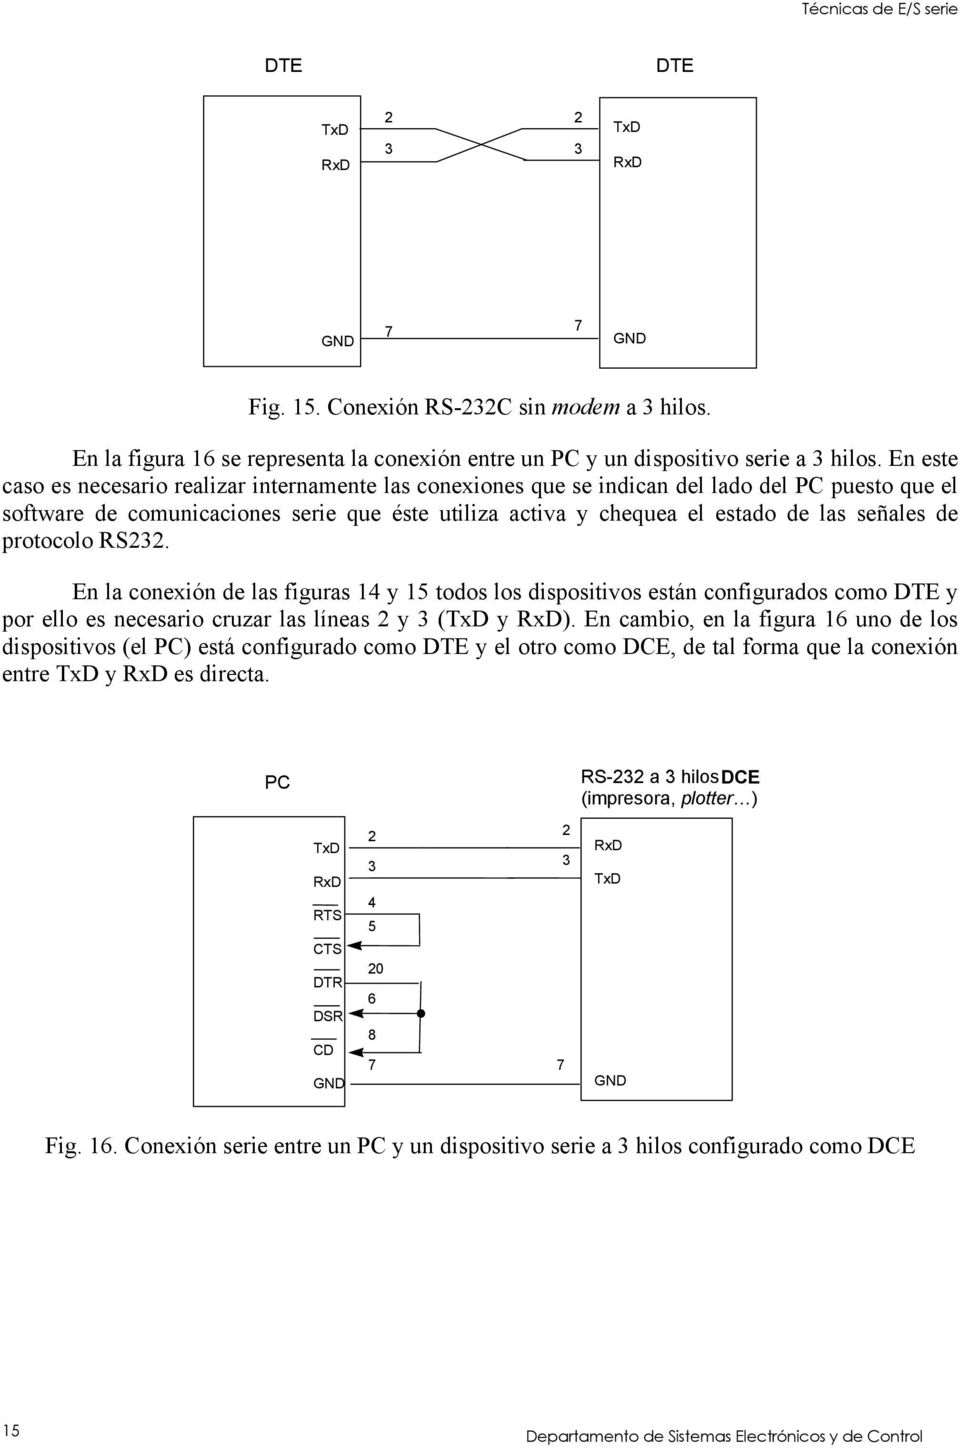 de protocolo RS232. En la conexión de las figuras 14 y 15 todos los dispositivos están configurados como DTE y por ello es necesario cruzar las líneas 2 y 3 (TxD y RxD).